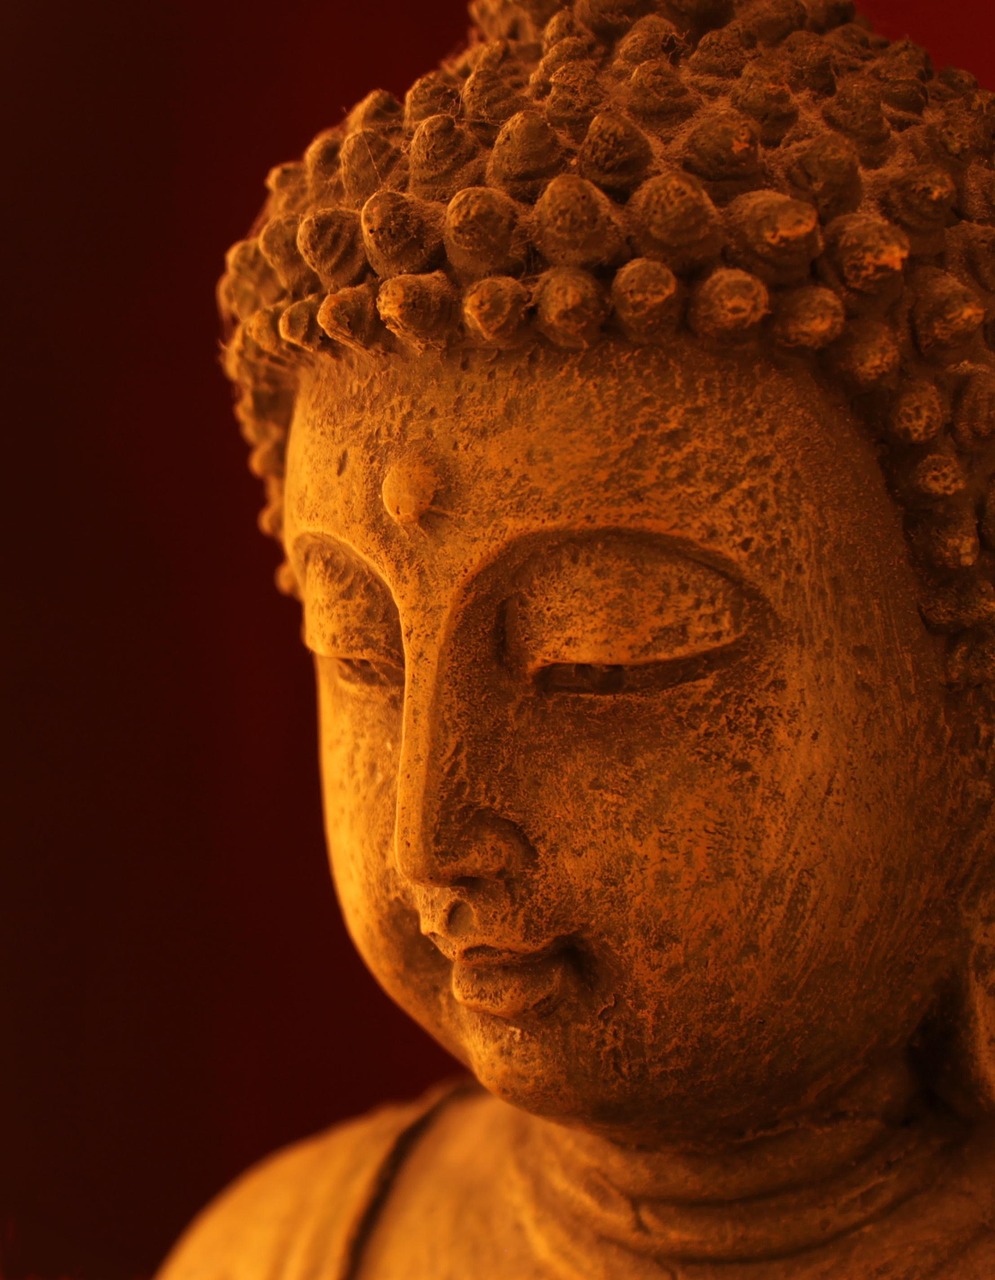 Išmintis, Zen, Meditacija, Budistinis, Ramybė, Veidas, Statula, Ramybė, Budizmas, Atsipalaidavimas